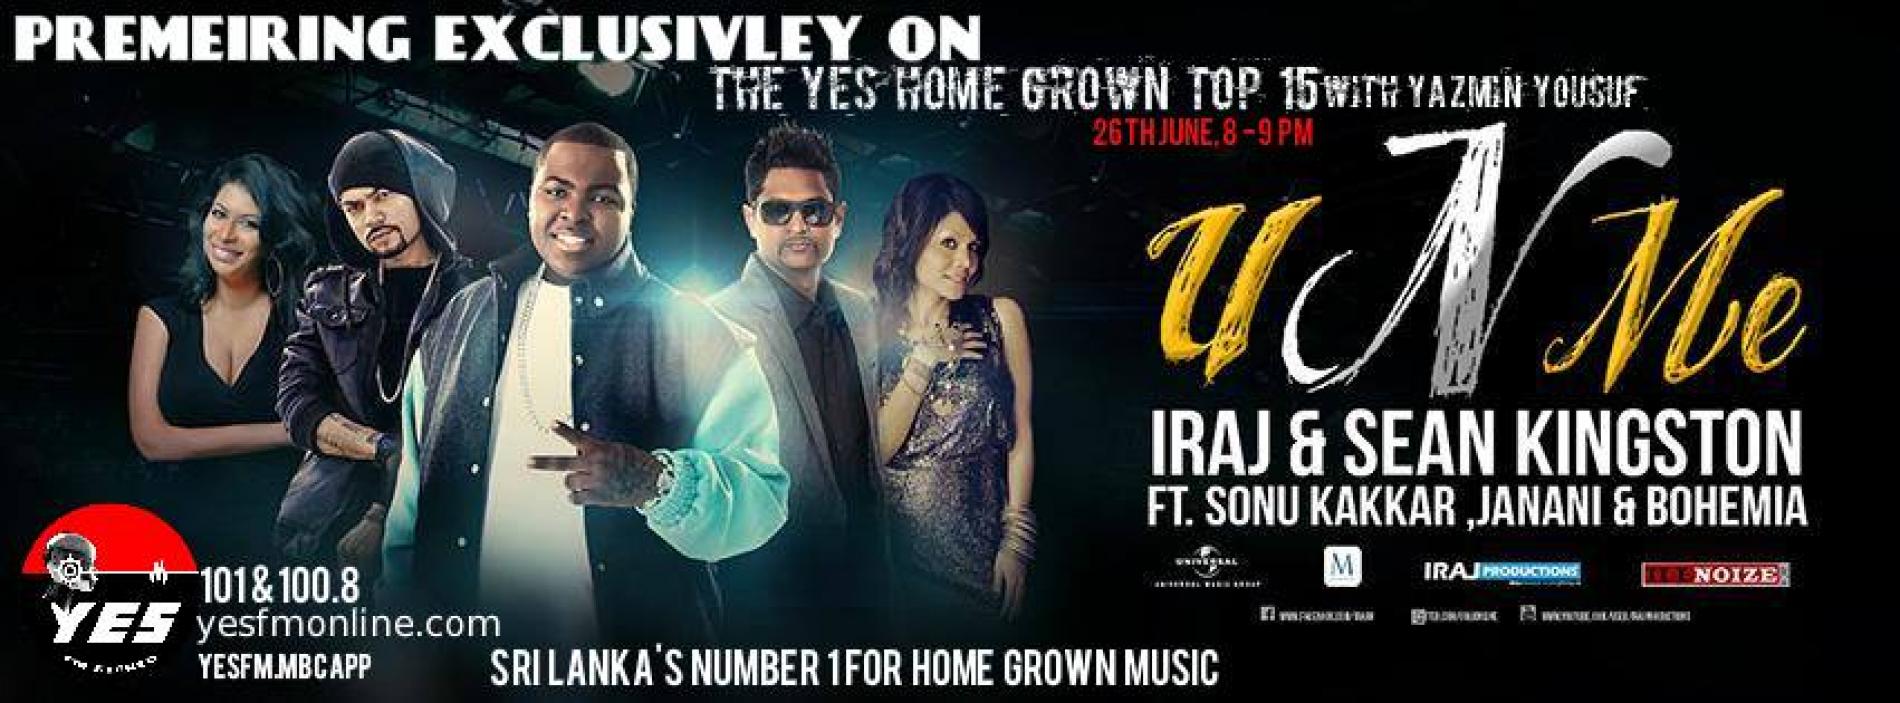 The Debut Of “U N Me” On YES Home Grown Top 15